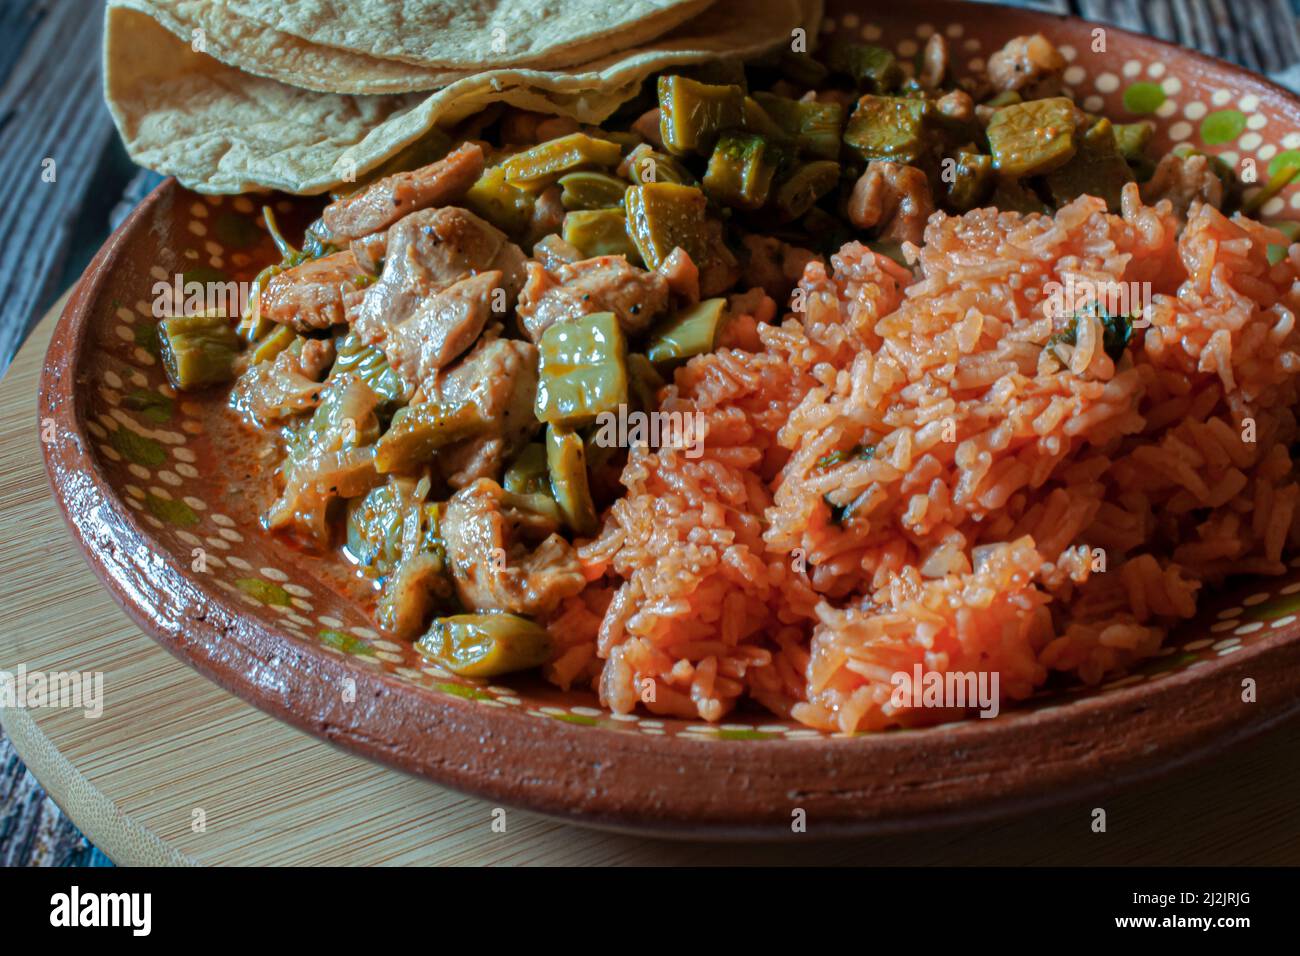 Cerdo. Comida mexicana, pollo con nopales y arroz mexicano con tortillas de maíz hechas a mano en un plato de barro o arcilla, sobre una tabla de corte redonda de madera. Foto de stock